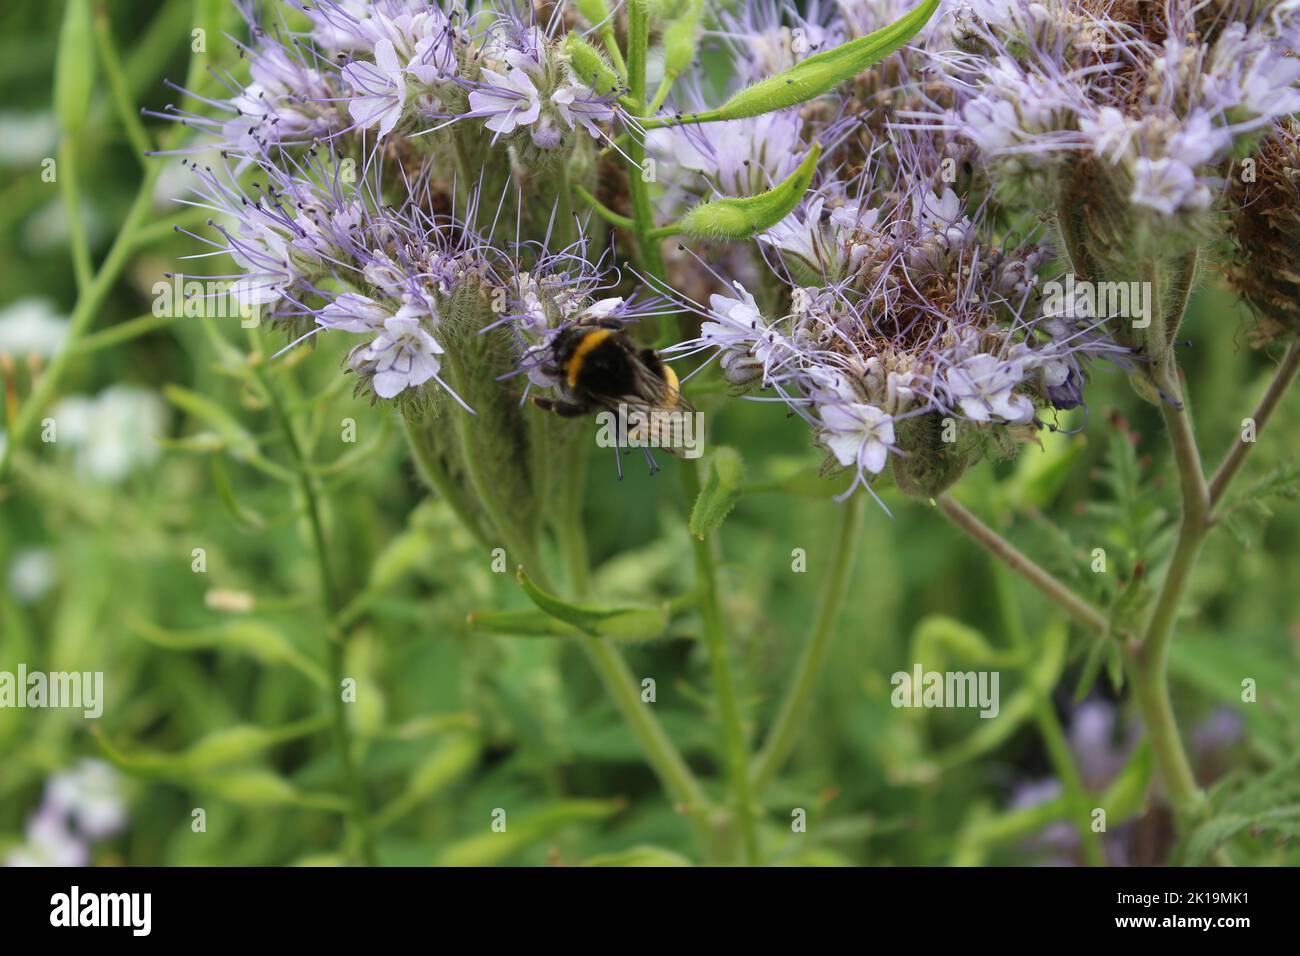 Une abeille sur des fleurs sauvages. Scène de pré de printemps. Les abeilles pollinisent une fleur sauvage. STAMEN et pistil. Vert en arrière-plan. Feuillage luxuriant. Macrophotographie. Banque D'Images